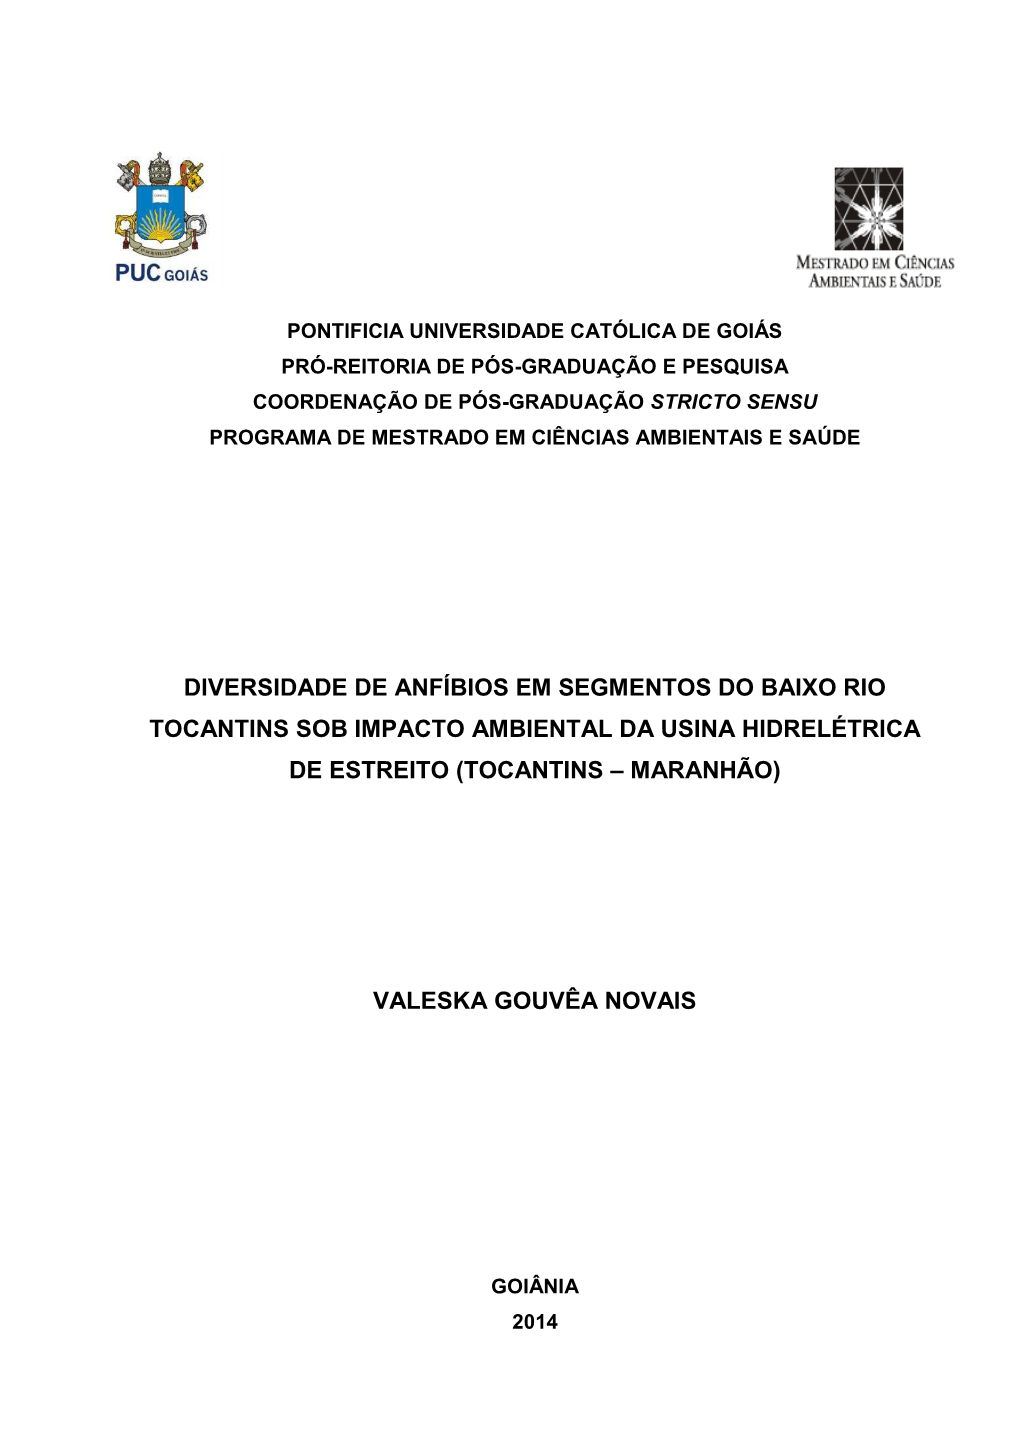 Tocantins Sob Impacto Ambiental Da Usina Hidrelétrica De Estreito (Tocantins – Maranhão)